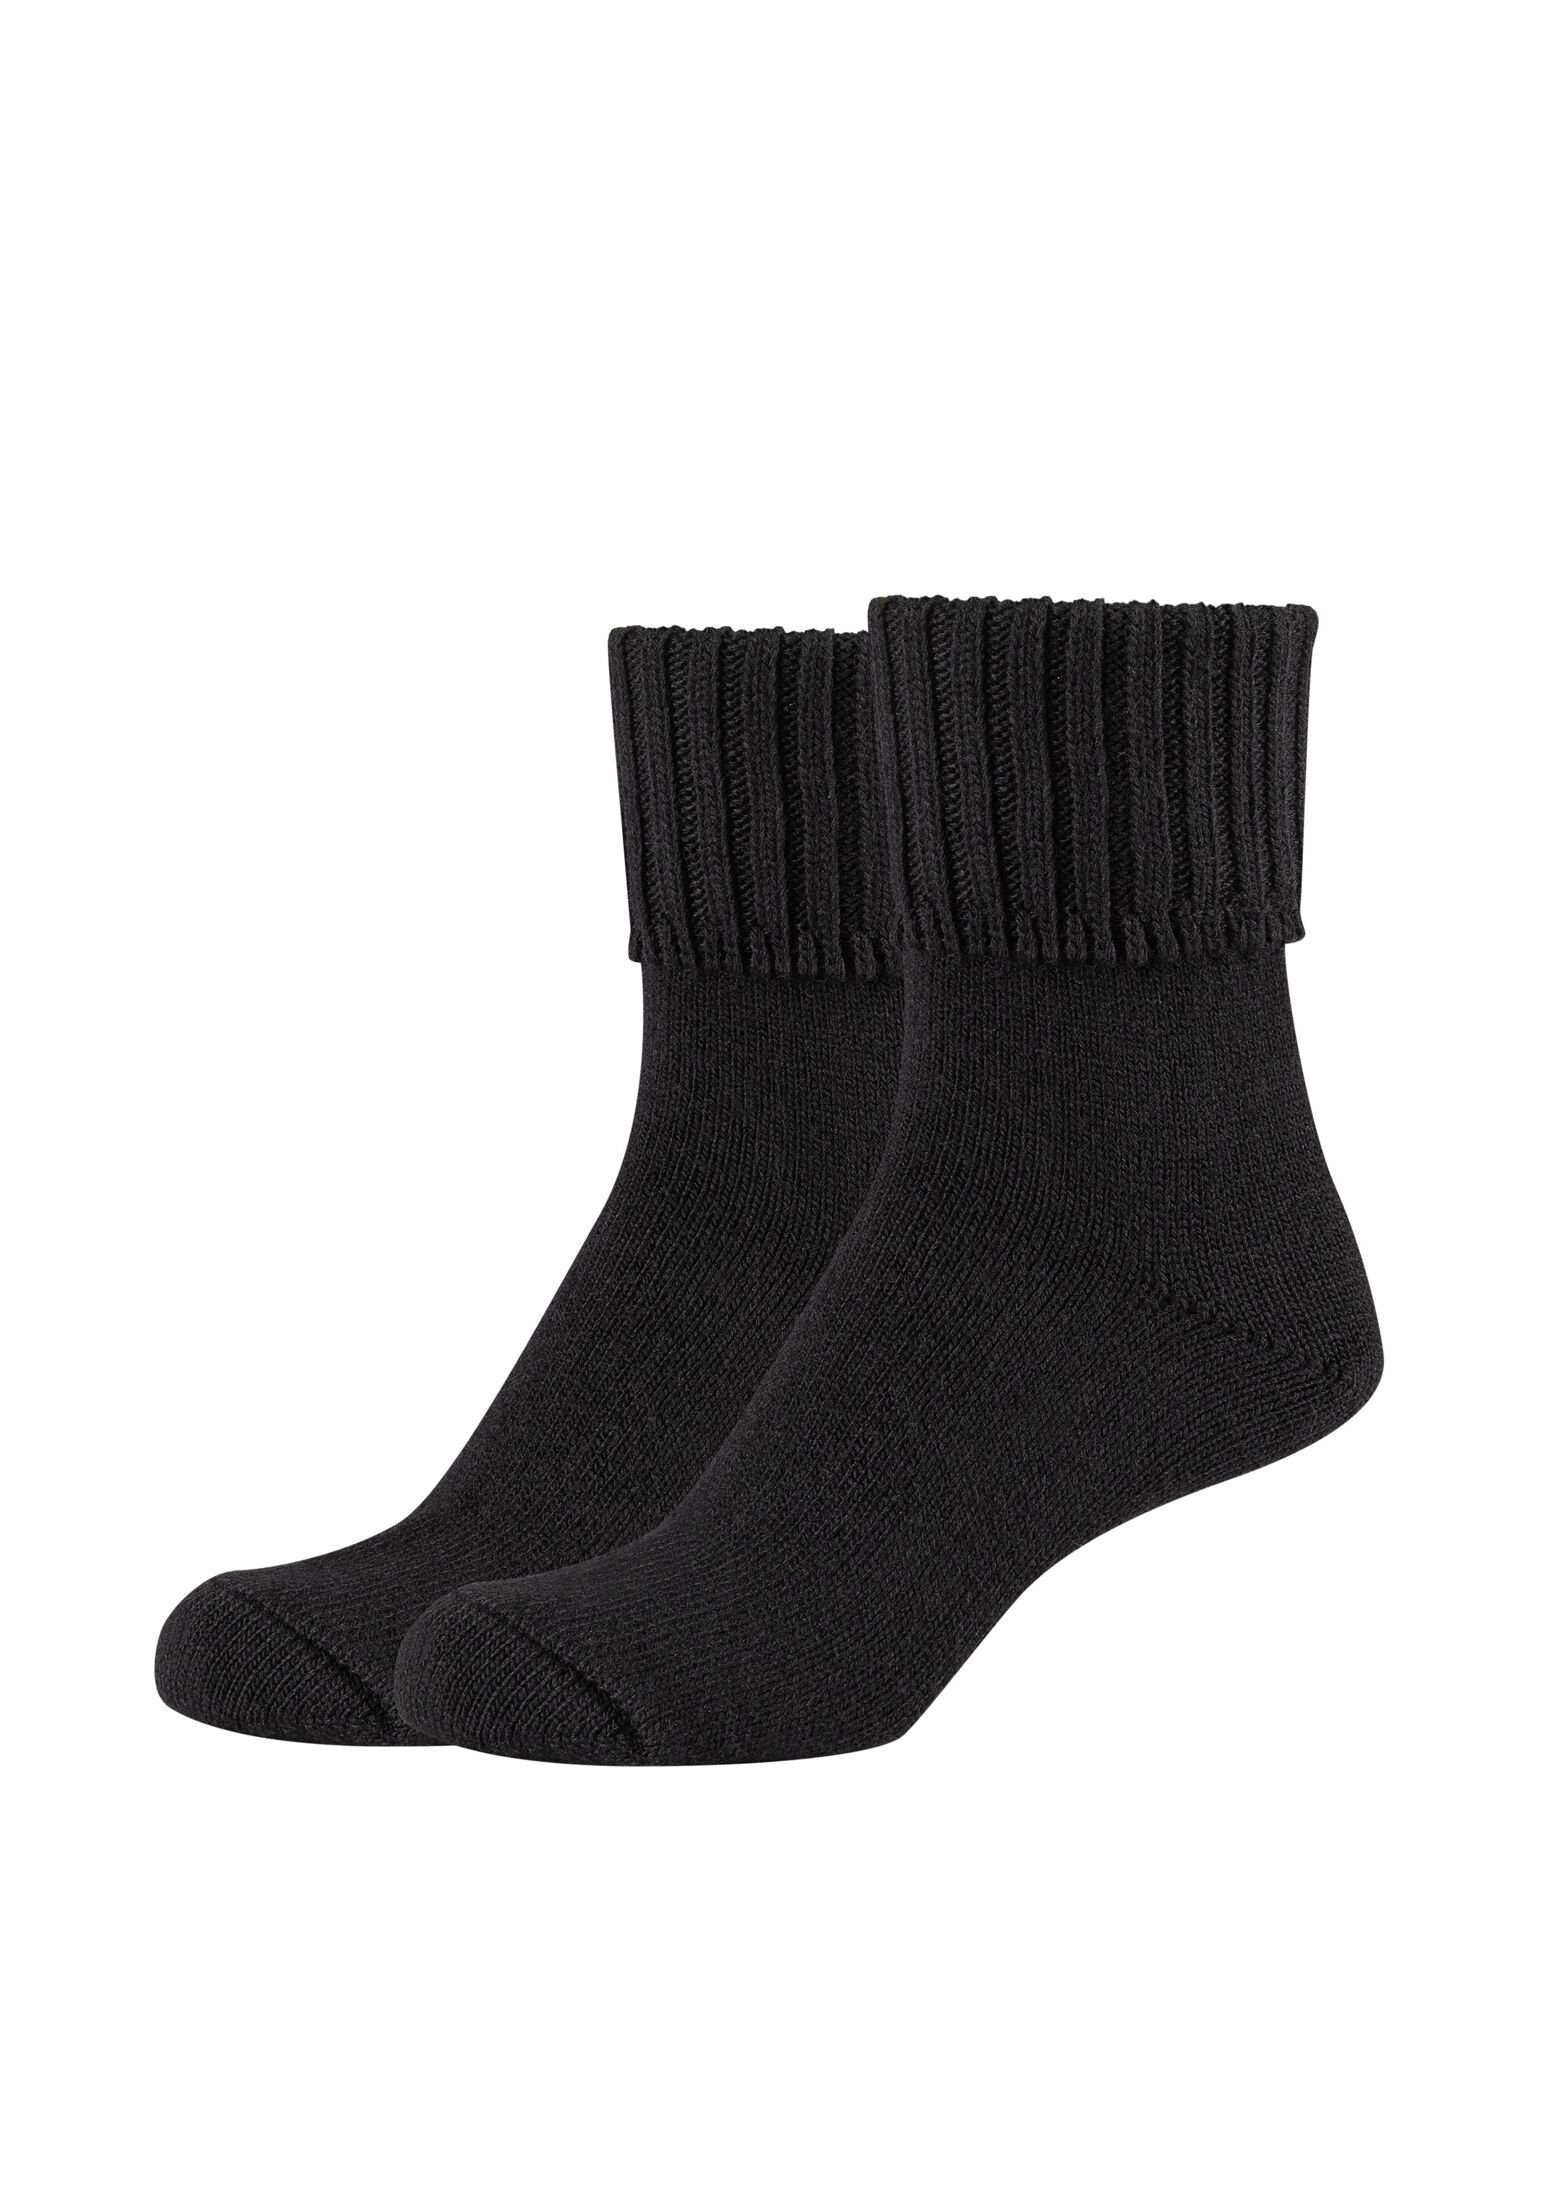 Camano black Socken Socken Pack 2er